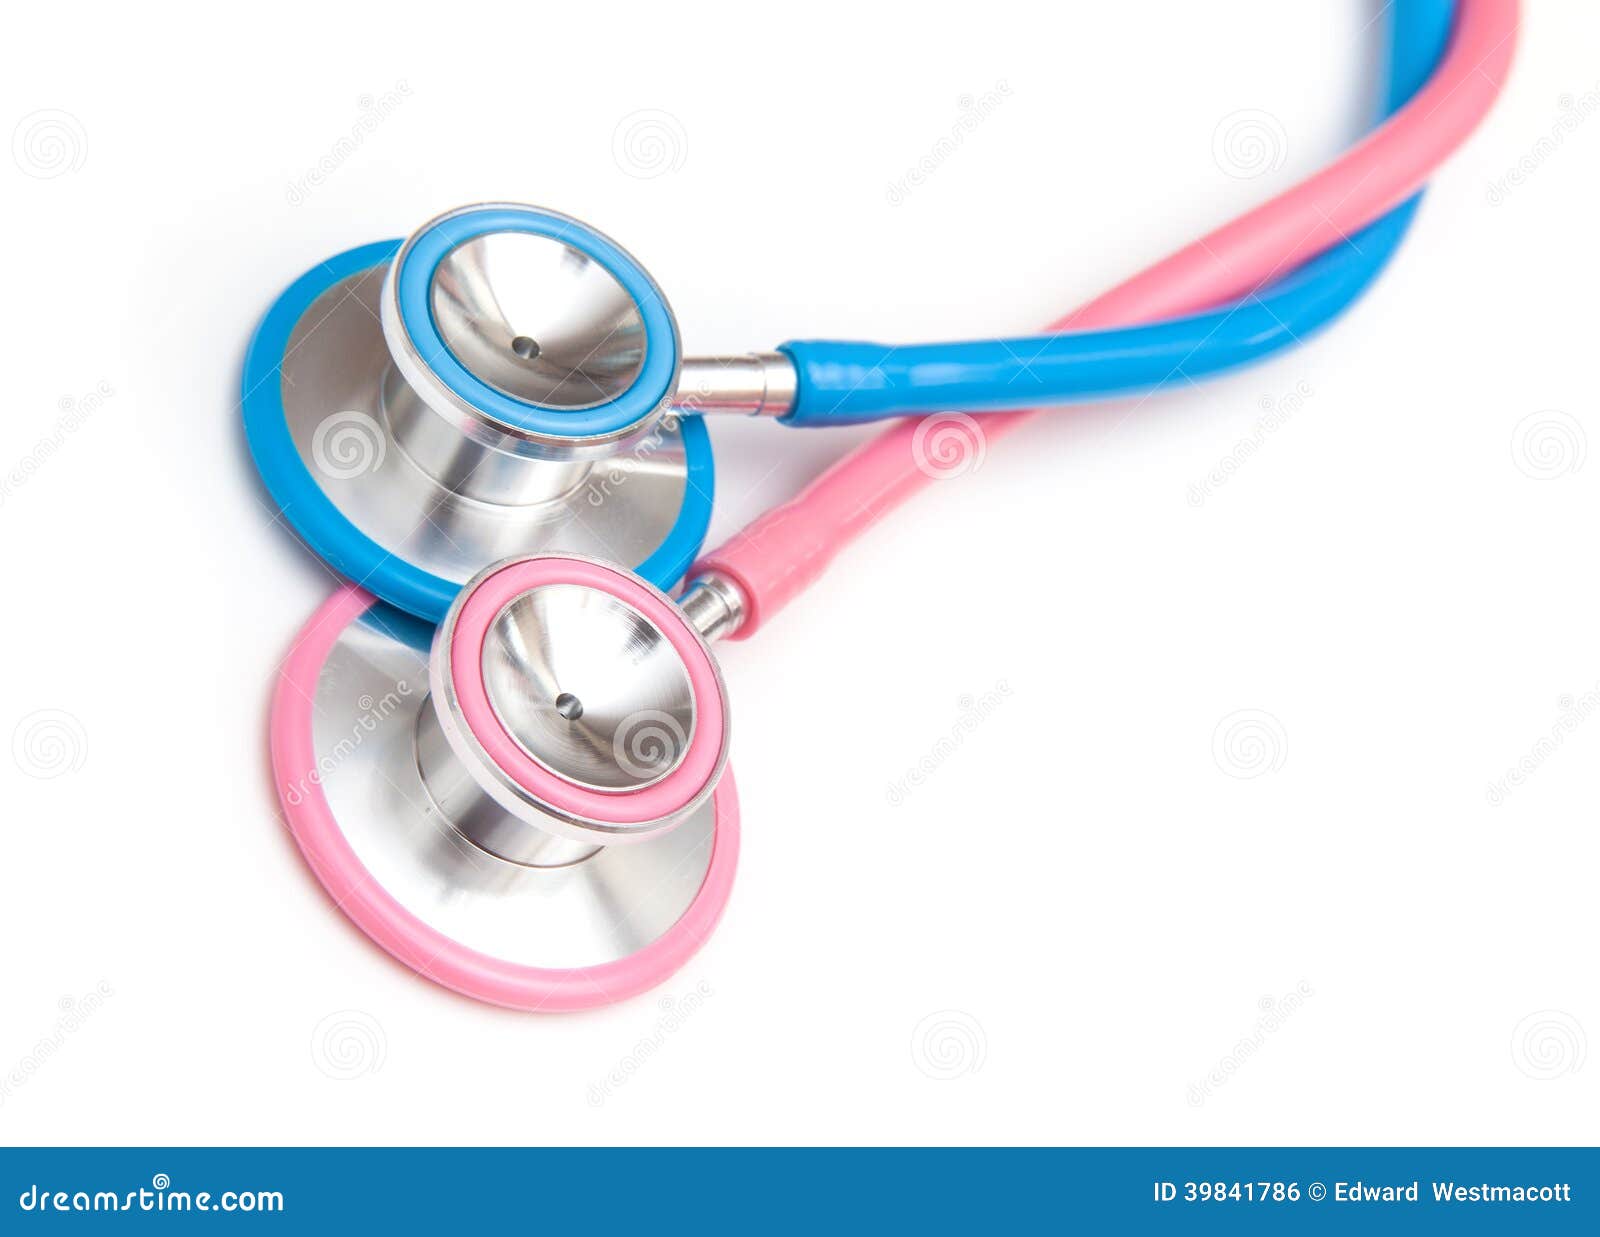 medical stethoscopes